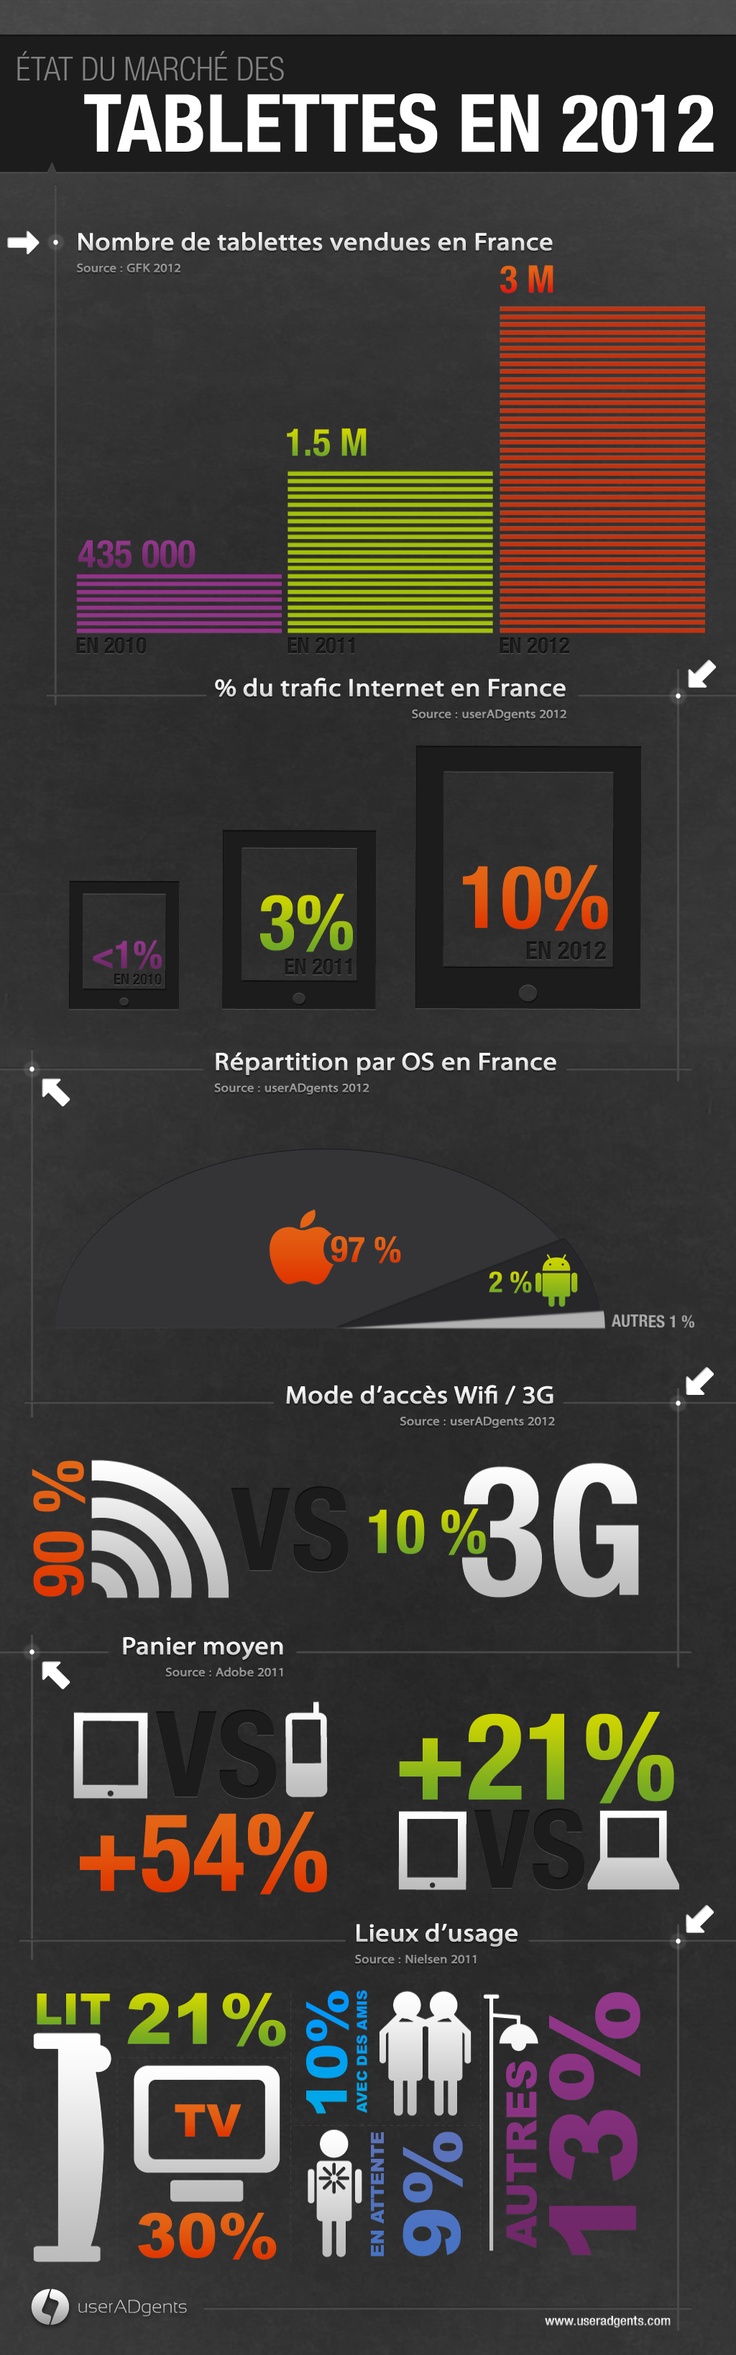 Advertising-Infographics-Une-infographie-sur-le-marche-des-tablettes Advertising Infographics : Une infographie sur le marché des tablettes en France en 2012